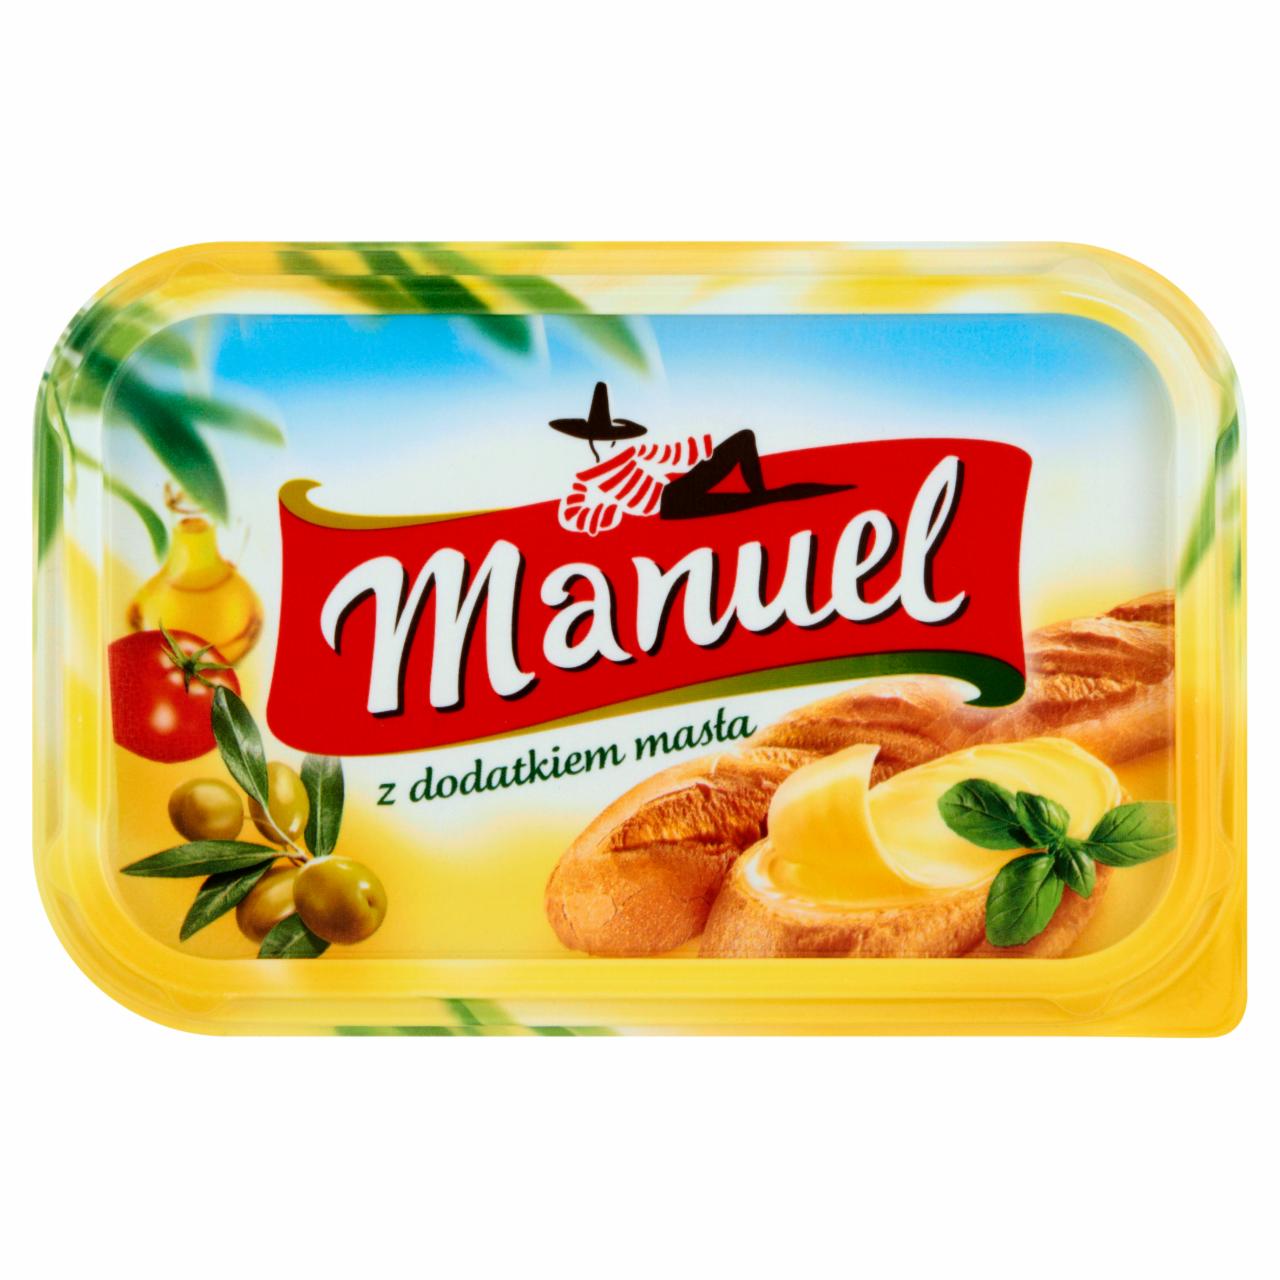 Zdjęcia - Manuel z dodatkiem masła Margaryna 450 g